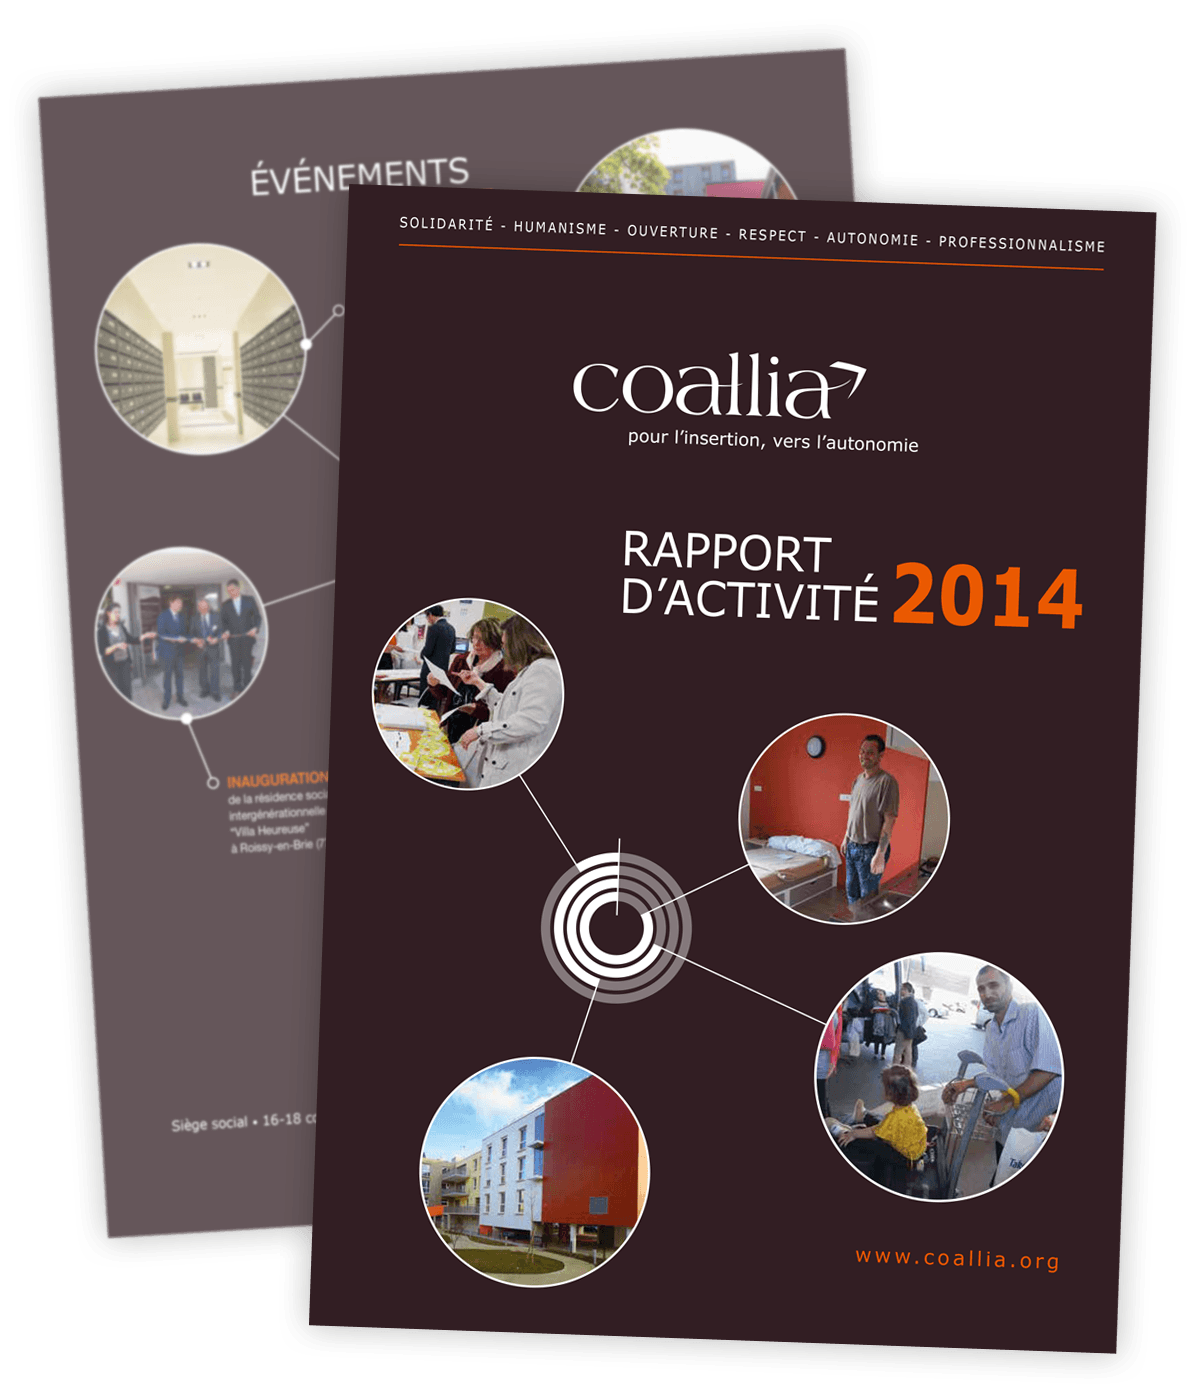 Rapport d'activité 2014 créé pour Coallia par Caramel & Paprika - Première et dernière pages de couverture (photos © Coallia / Sylvain Frappat)